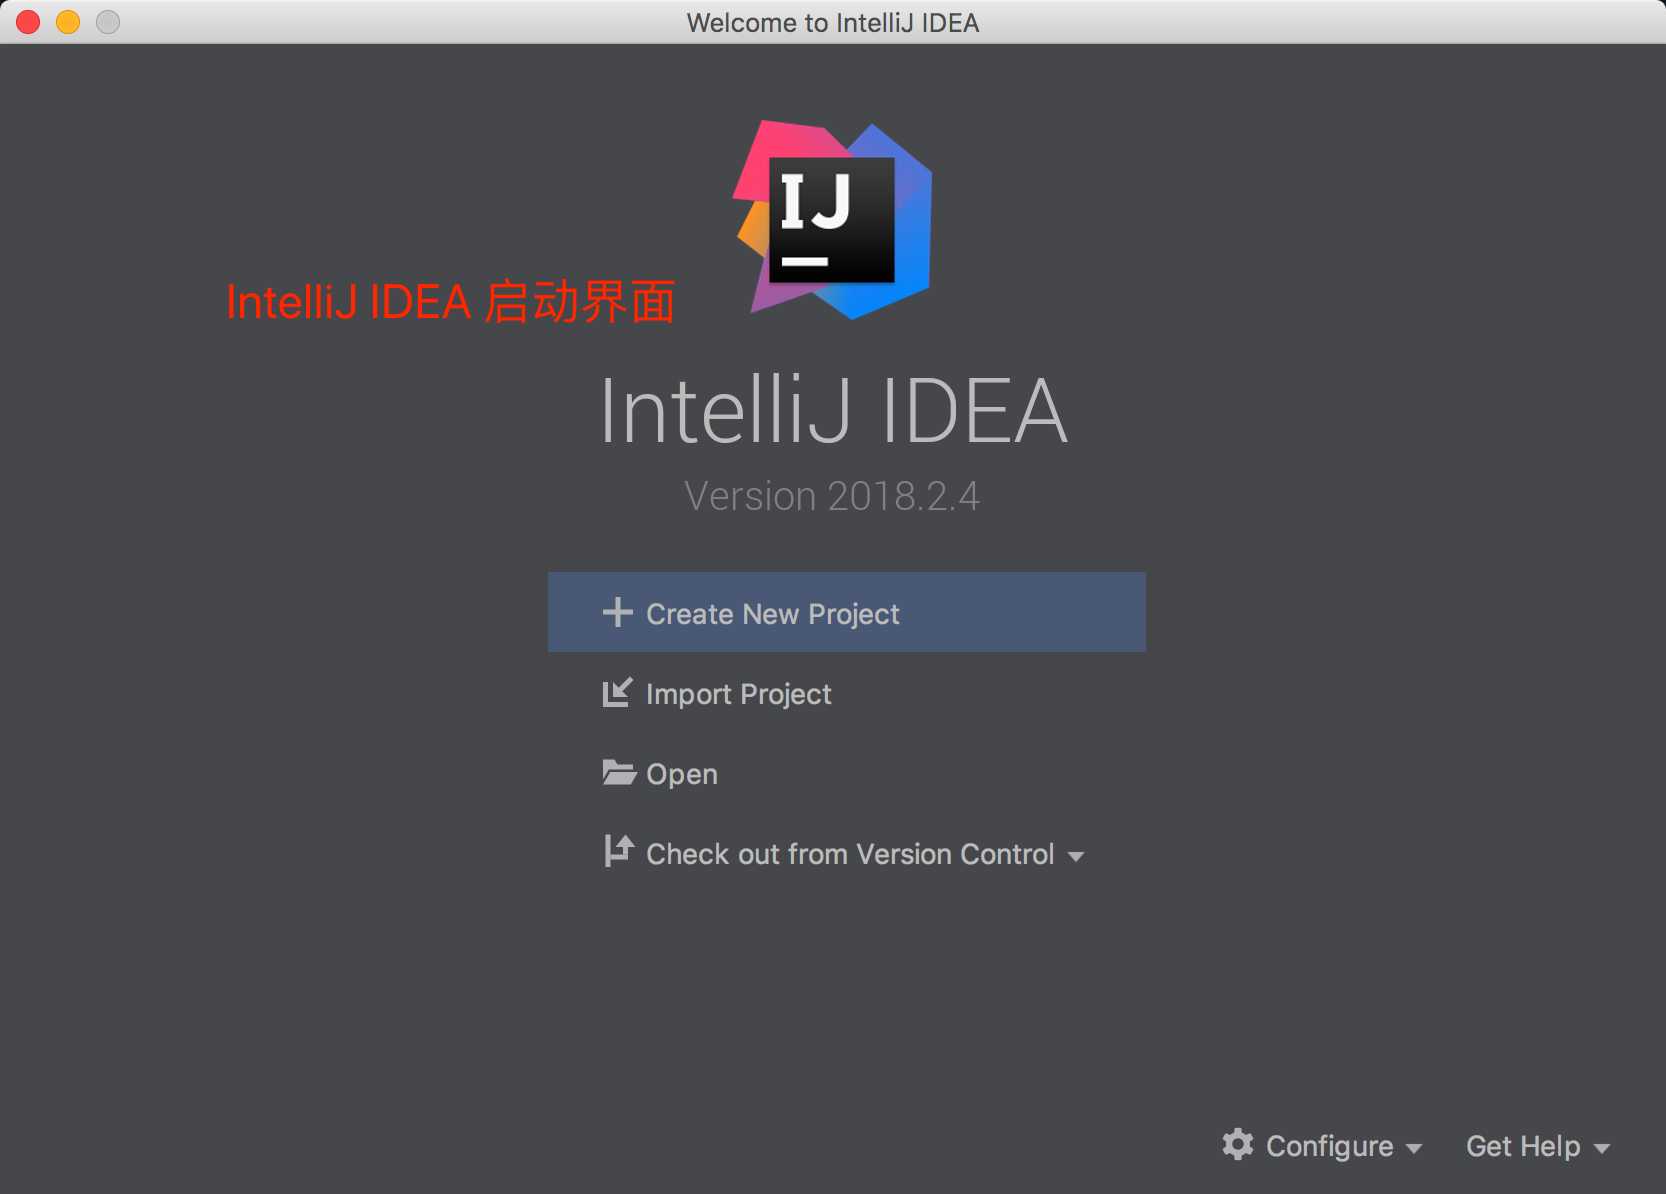 idea_start_interface